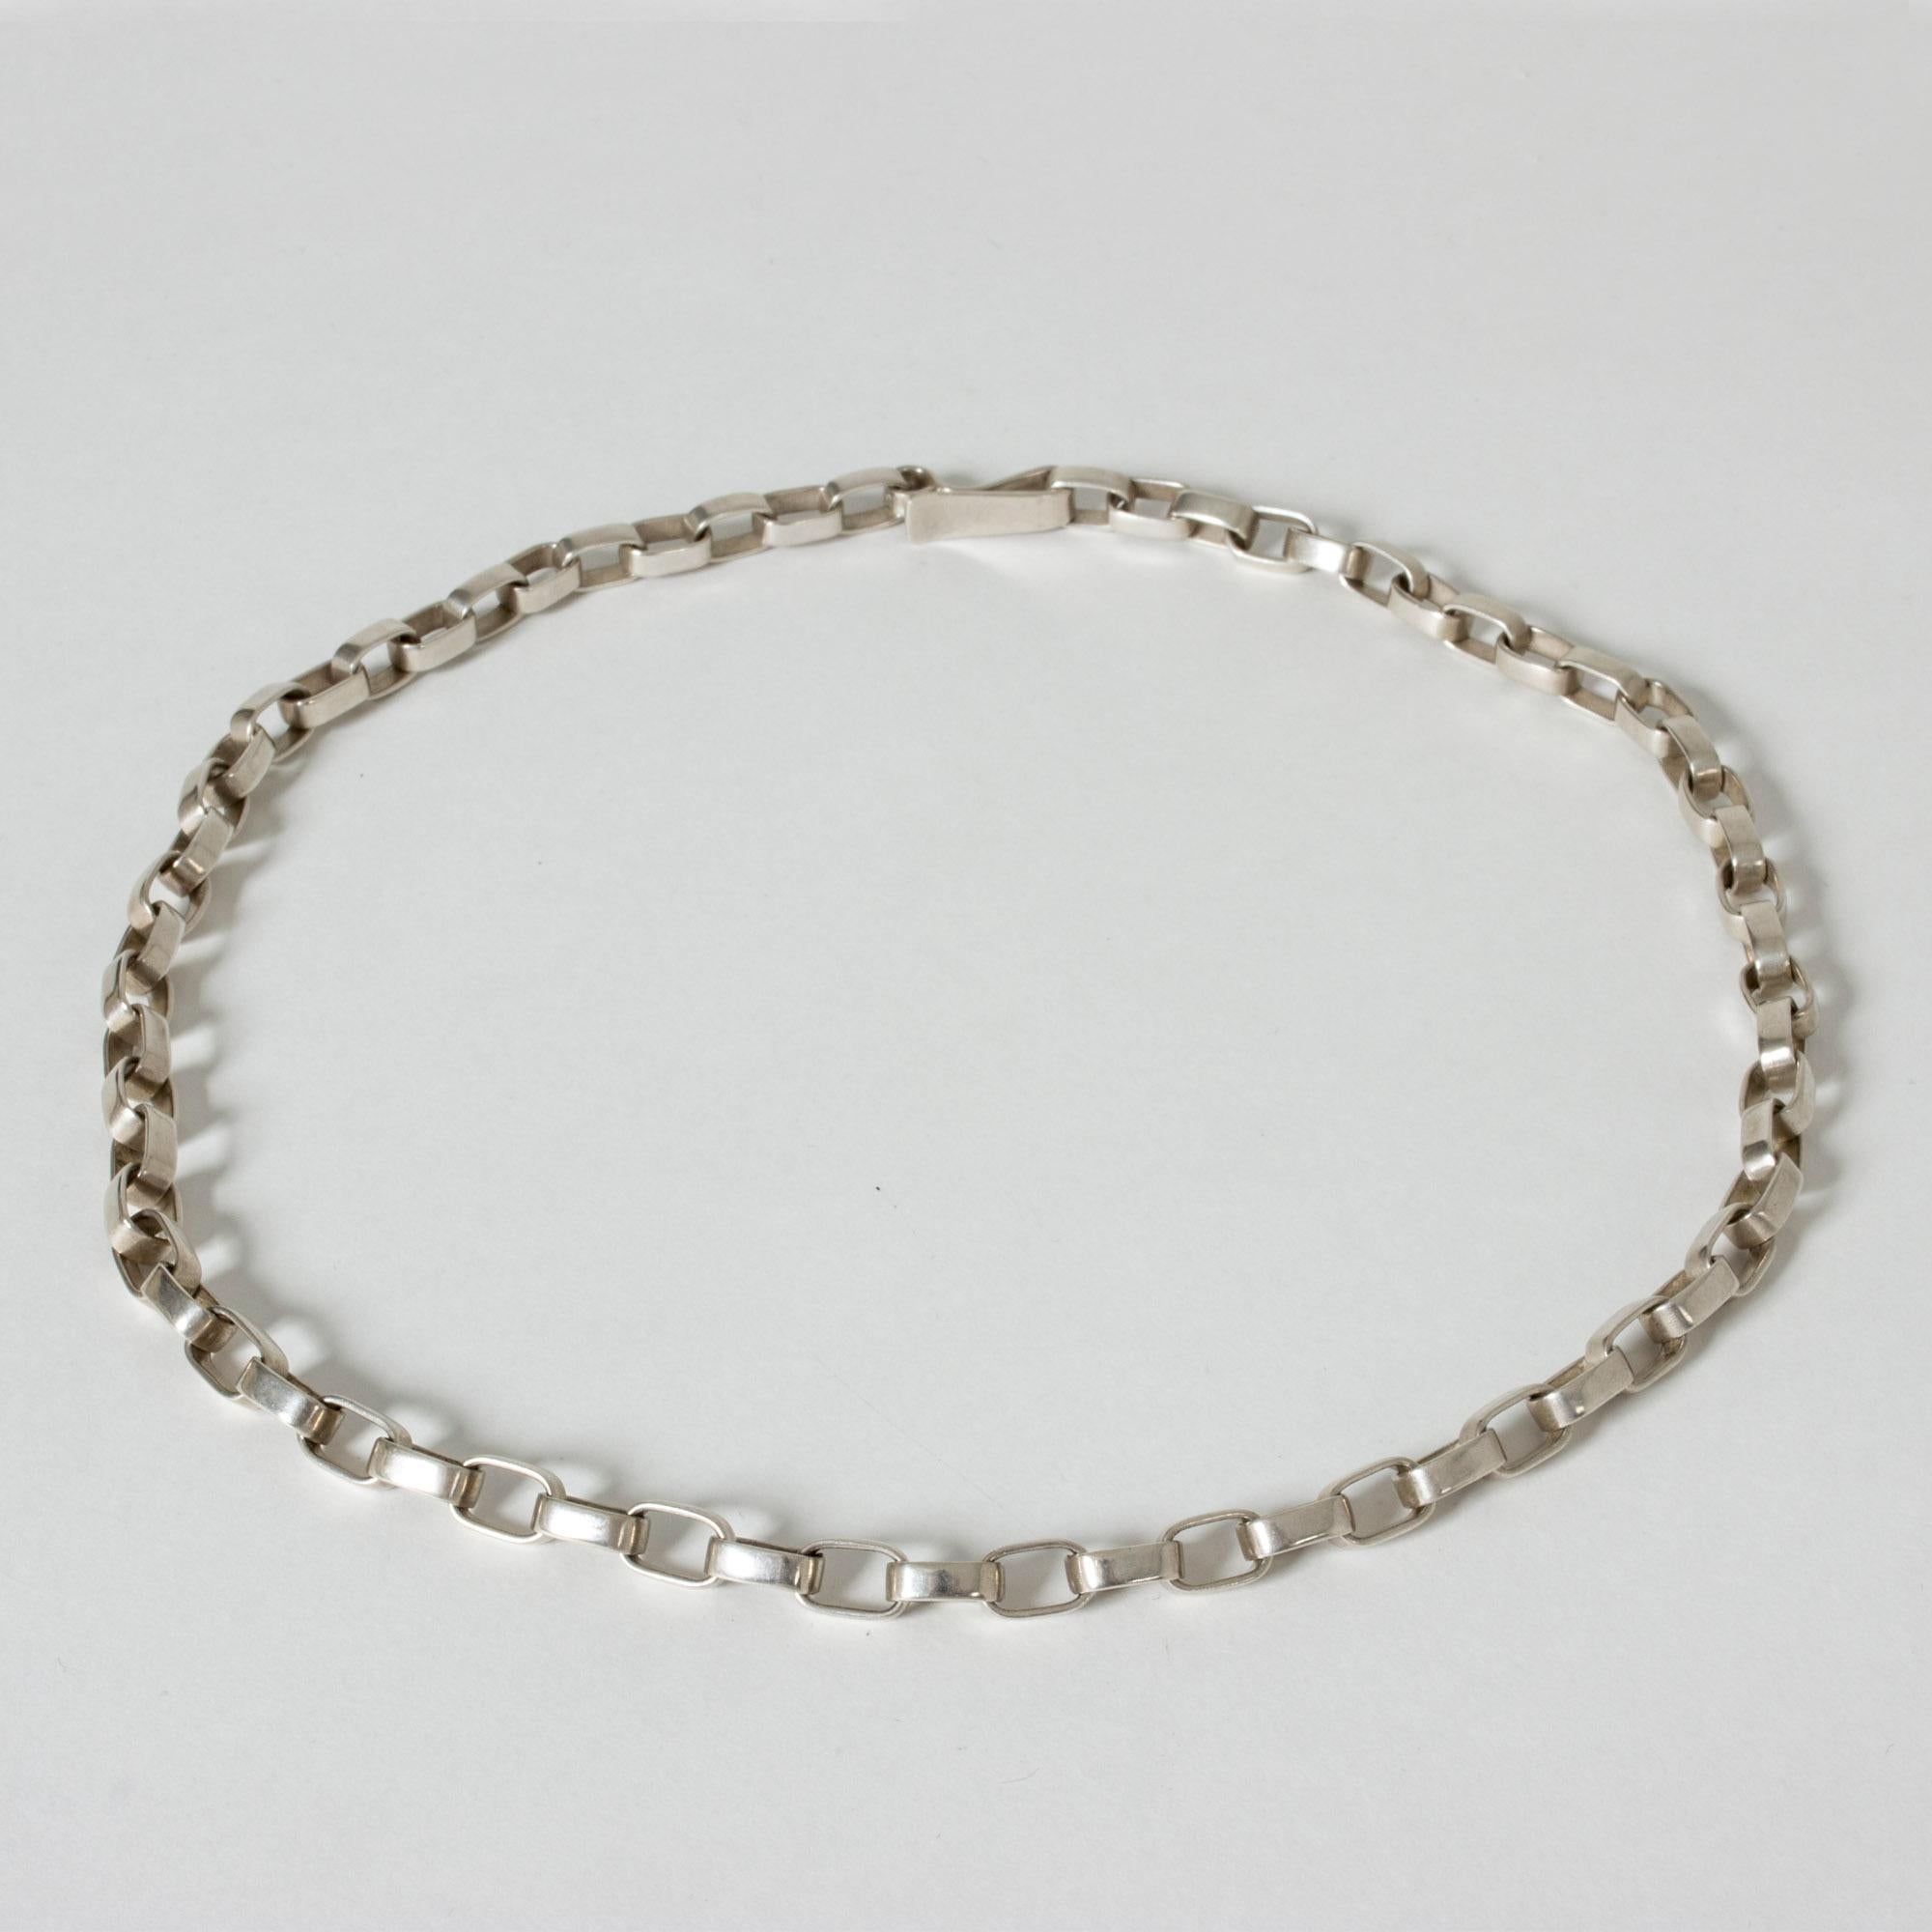 Modernist Silver Necklace by Sven-Erik Högberg, Sweden, 1974